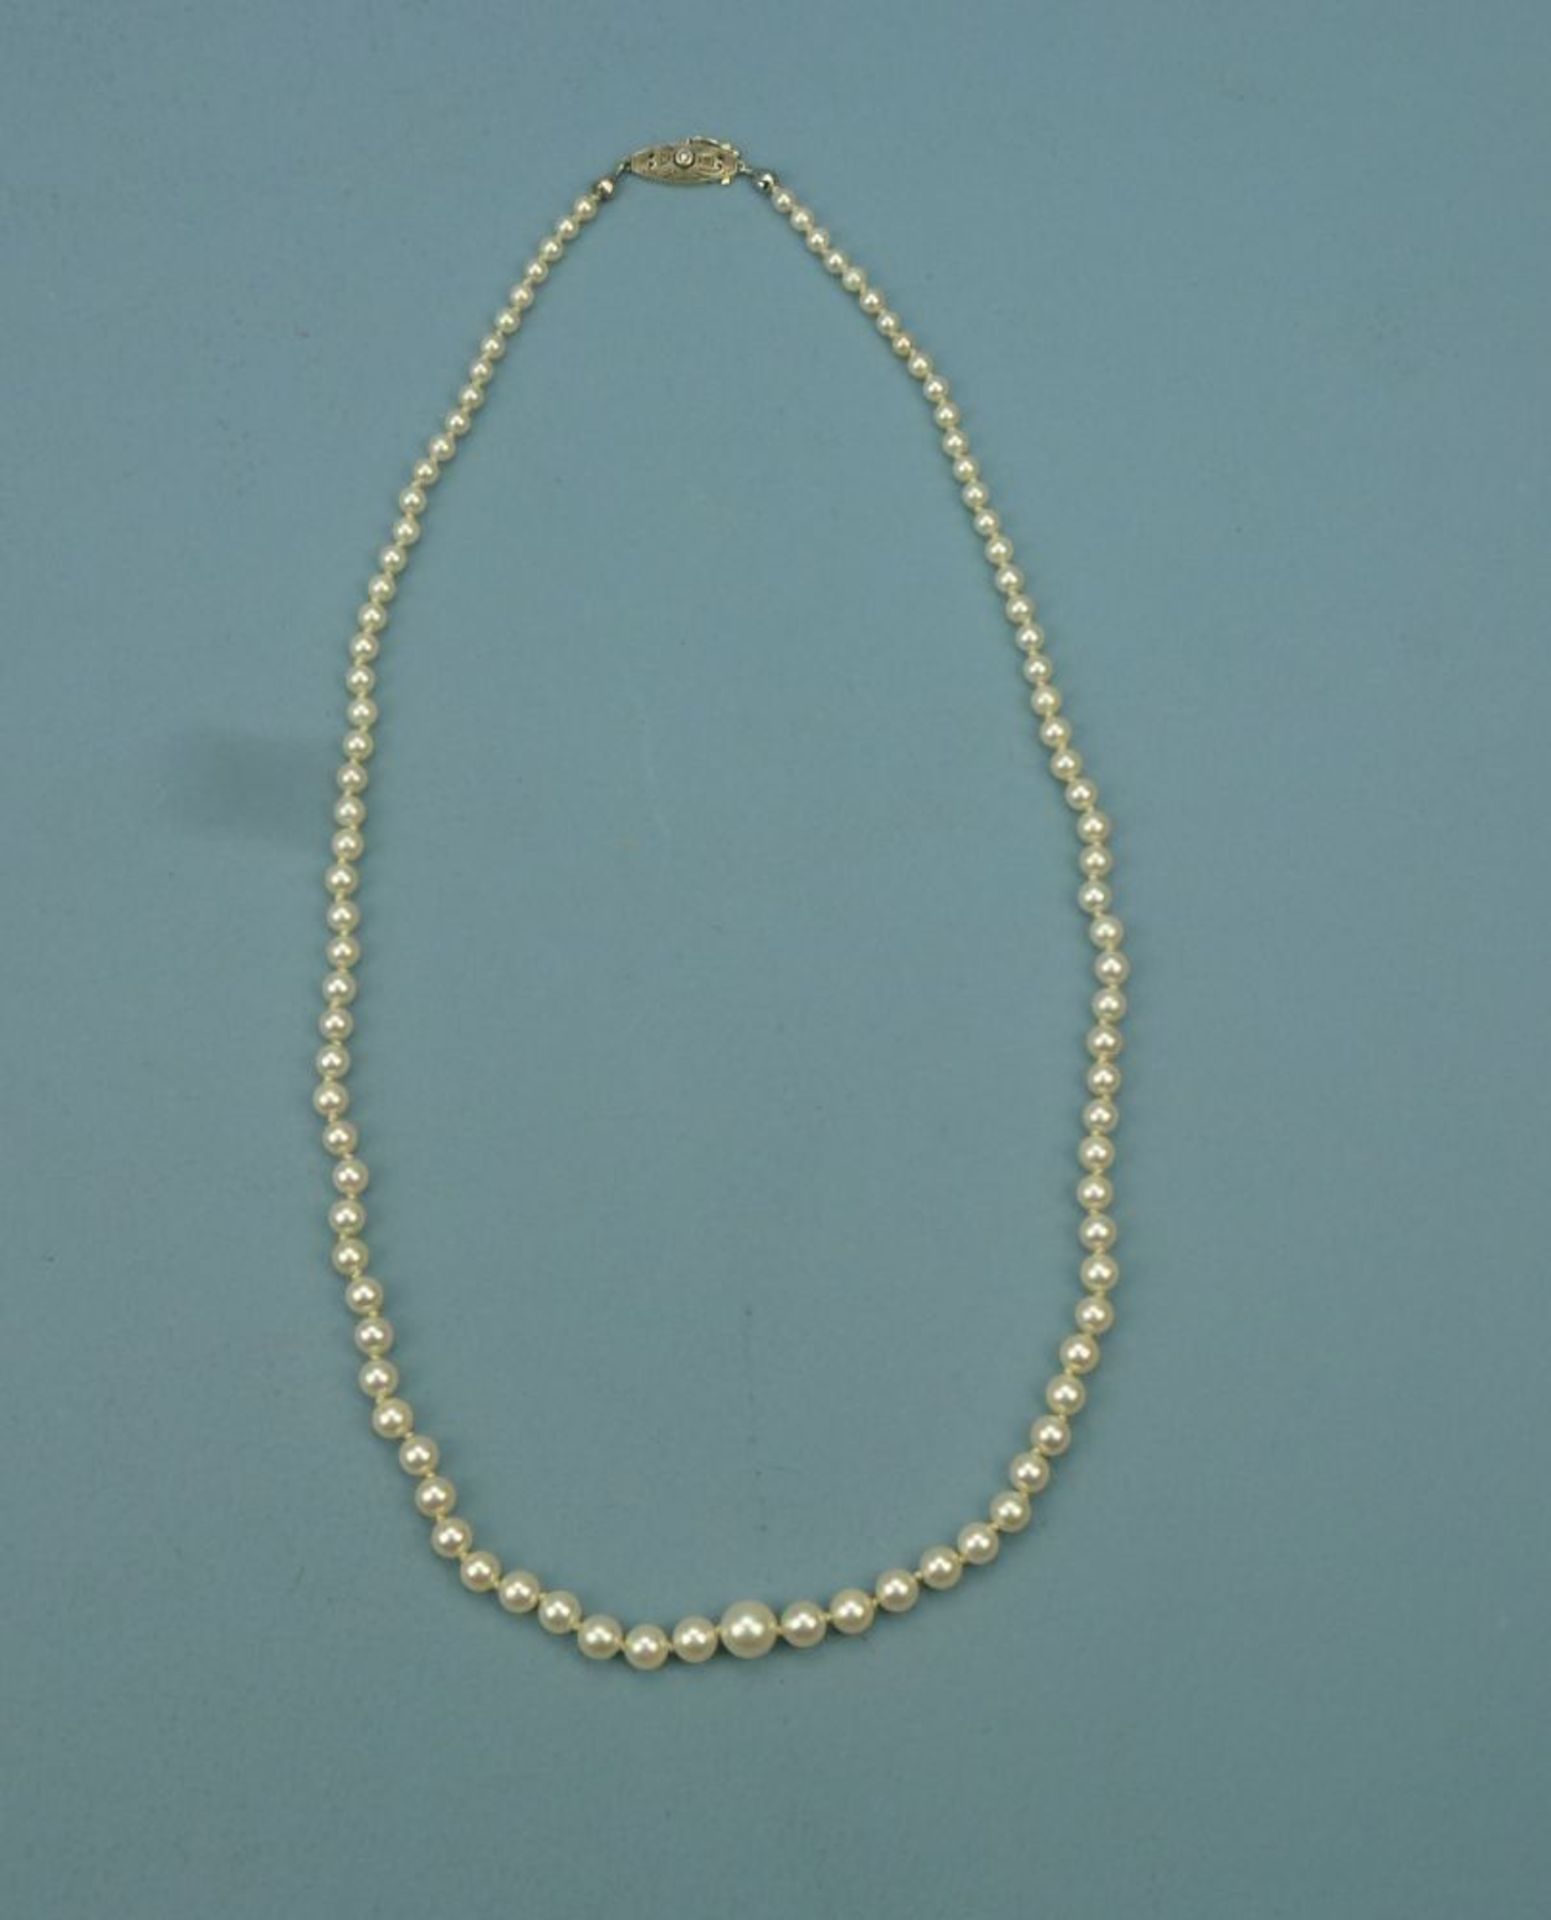 Perlenkette mit 585er Weiß-/GelbgoldschließeAkoyazuchtperlen, verlaufend Dm von 3,4-7,4 mm, Schließe - Bild 2 aus 2